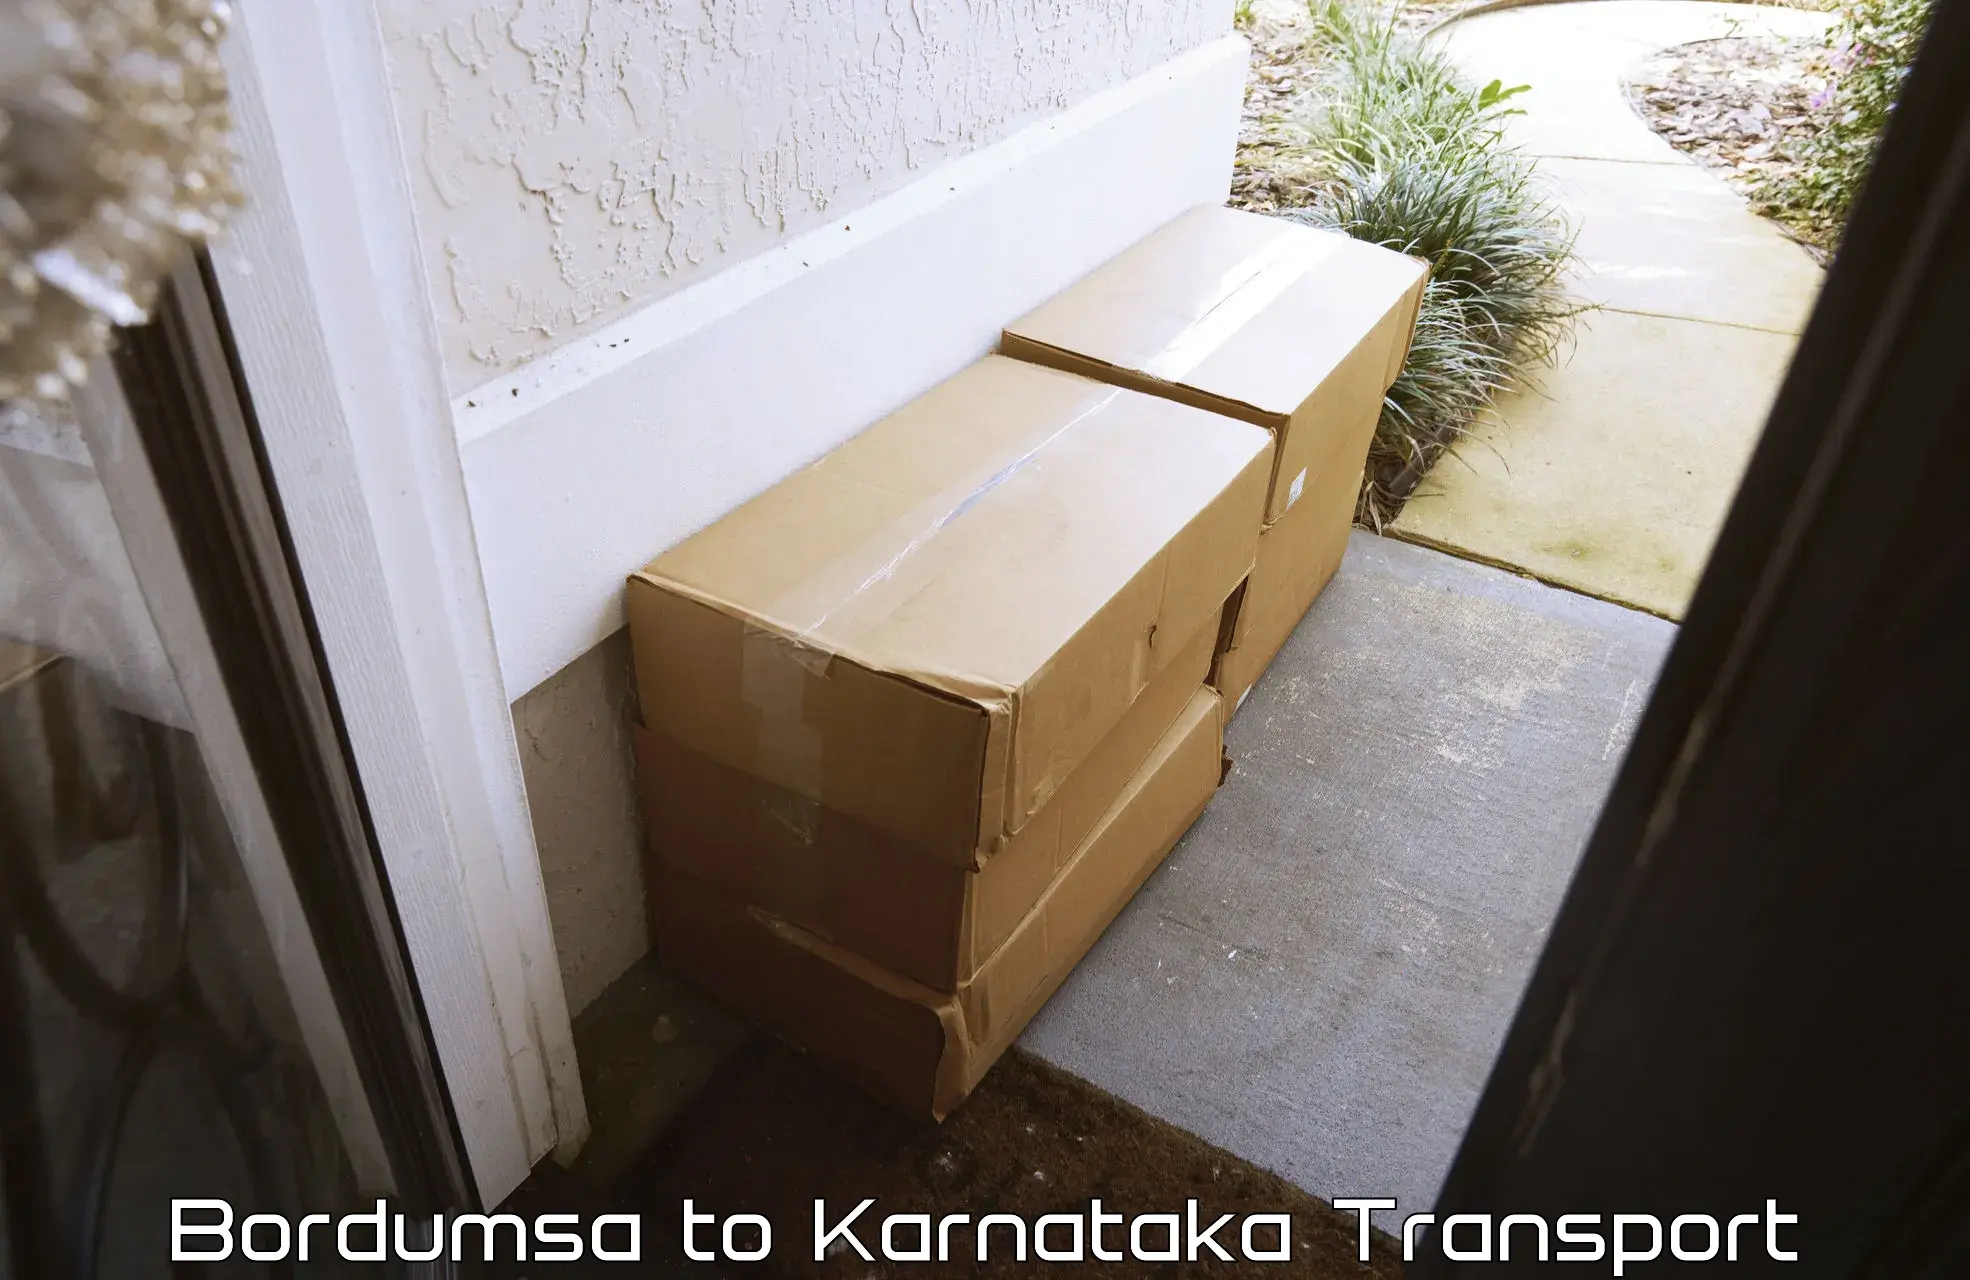 Delivery service Bordumsa to Mysore